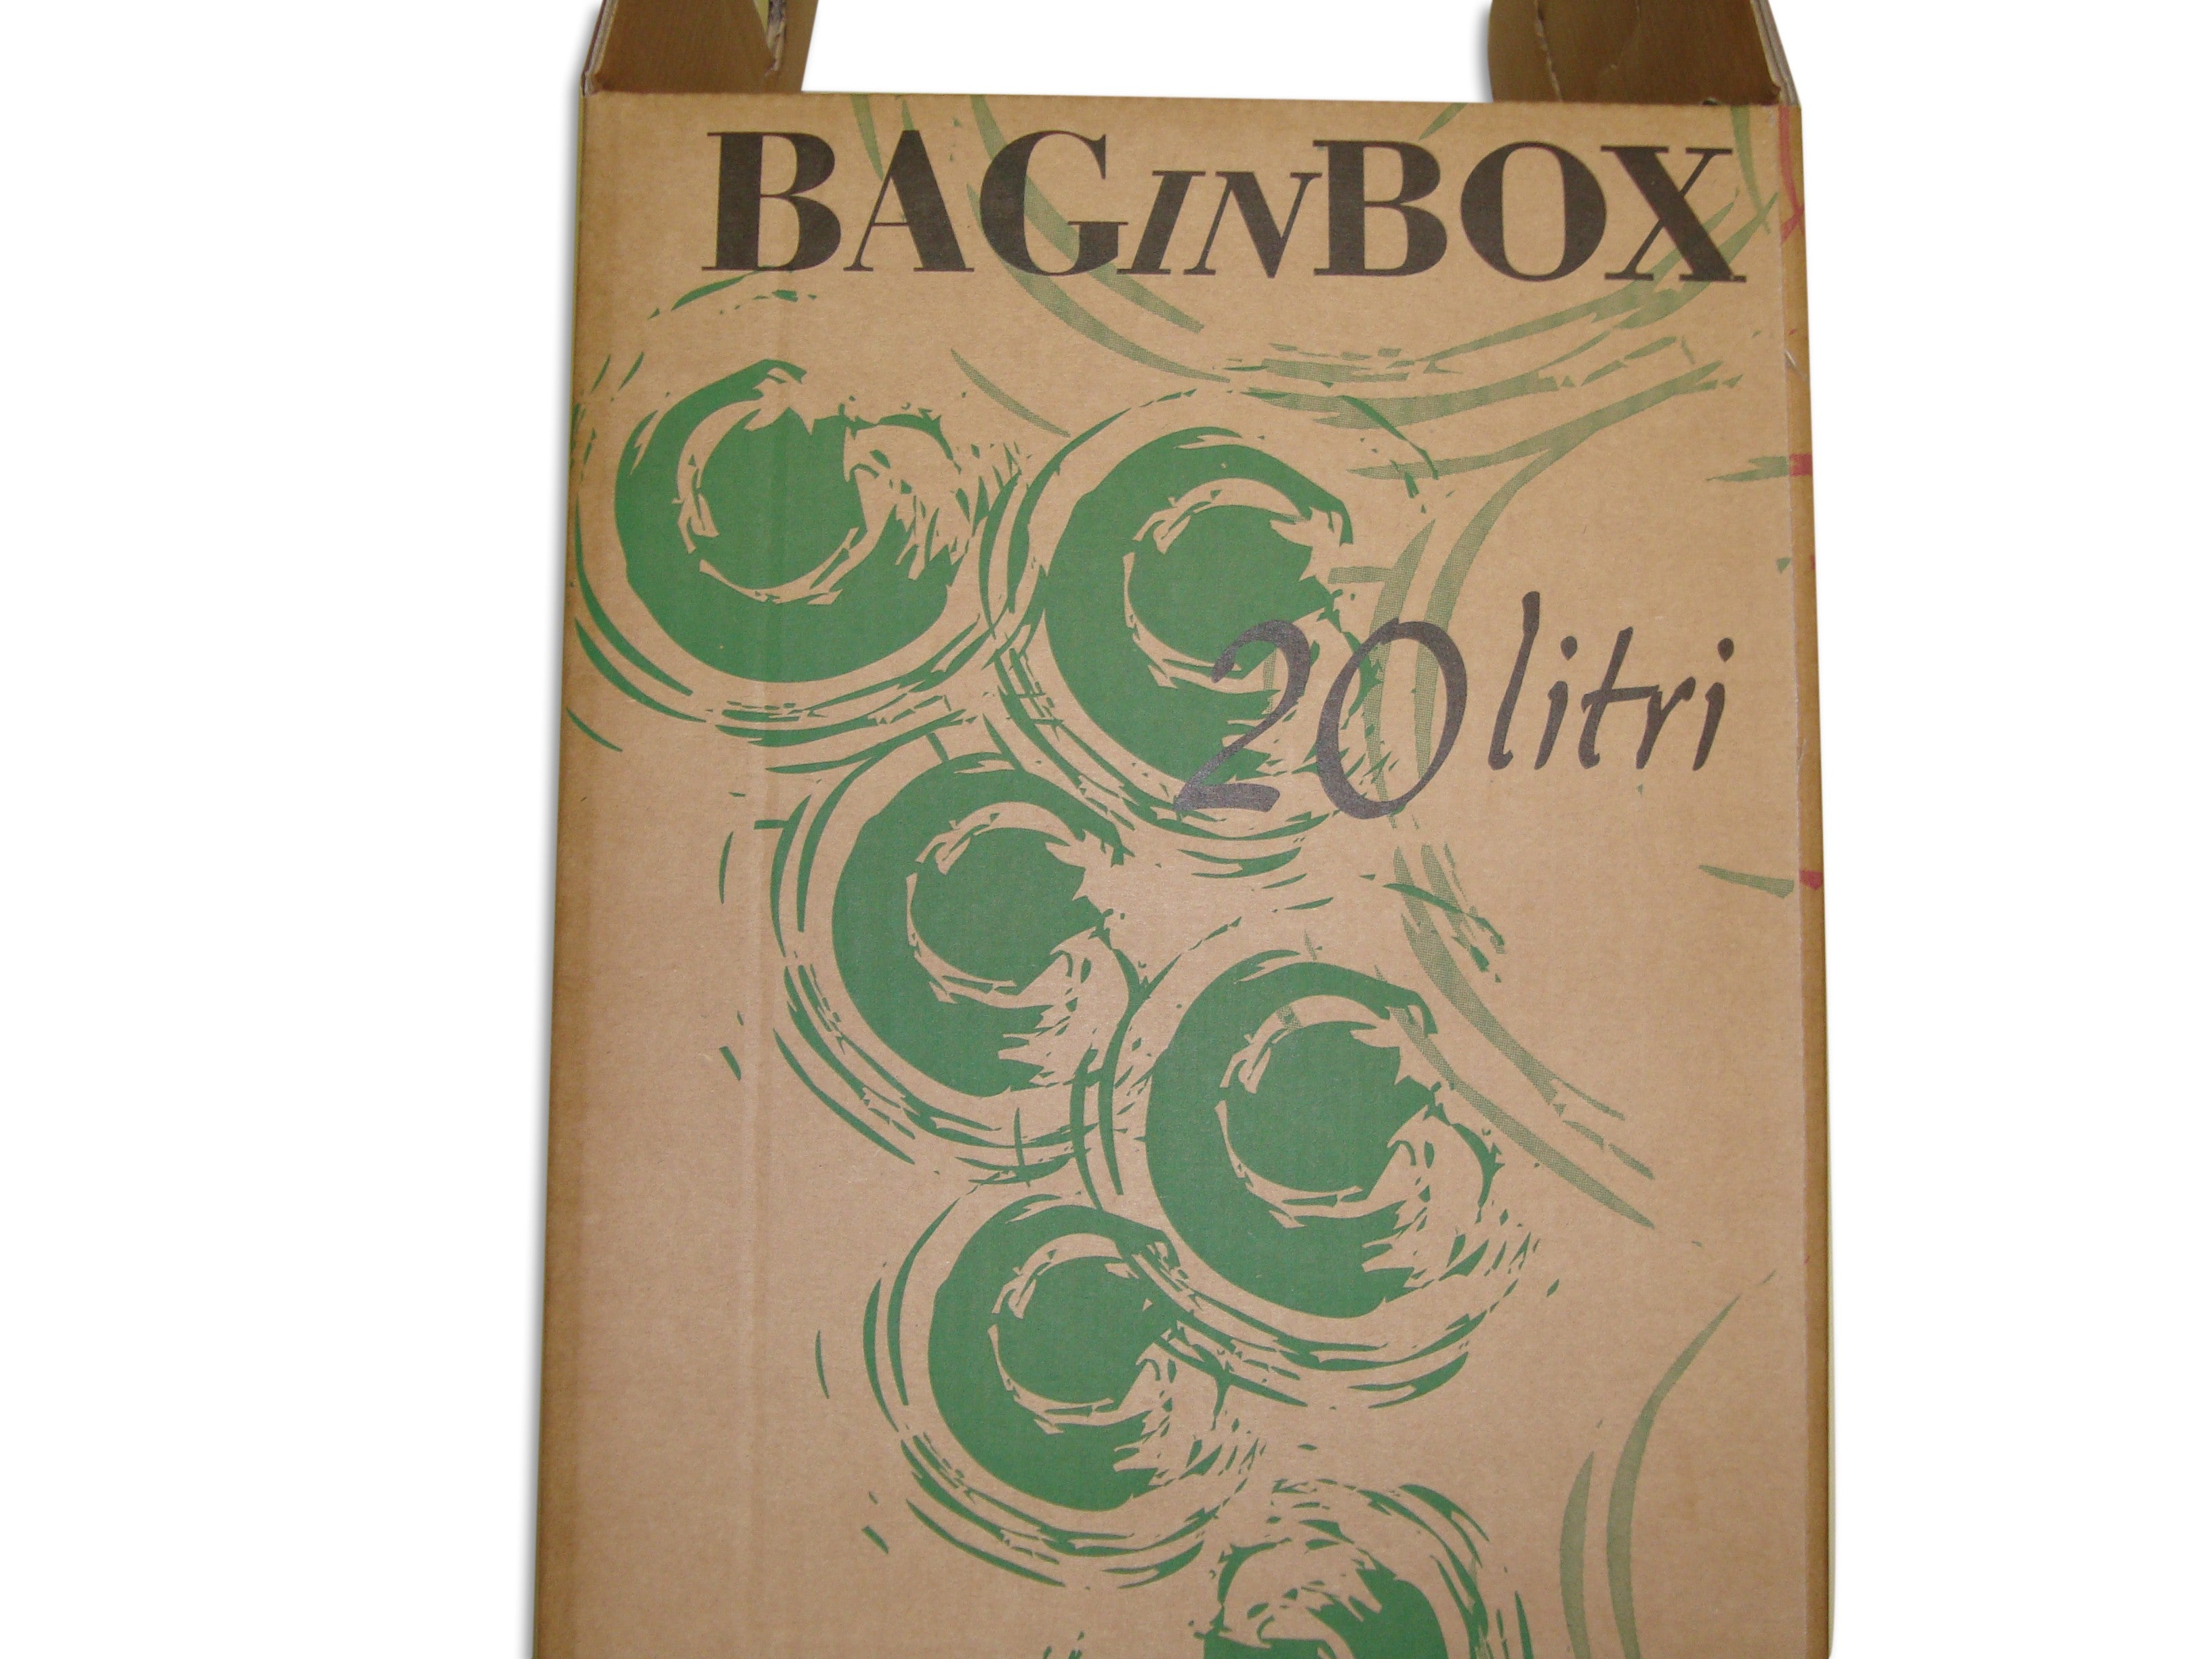 Scatola per bag in box 20 lt